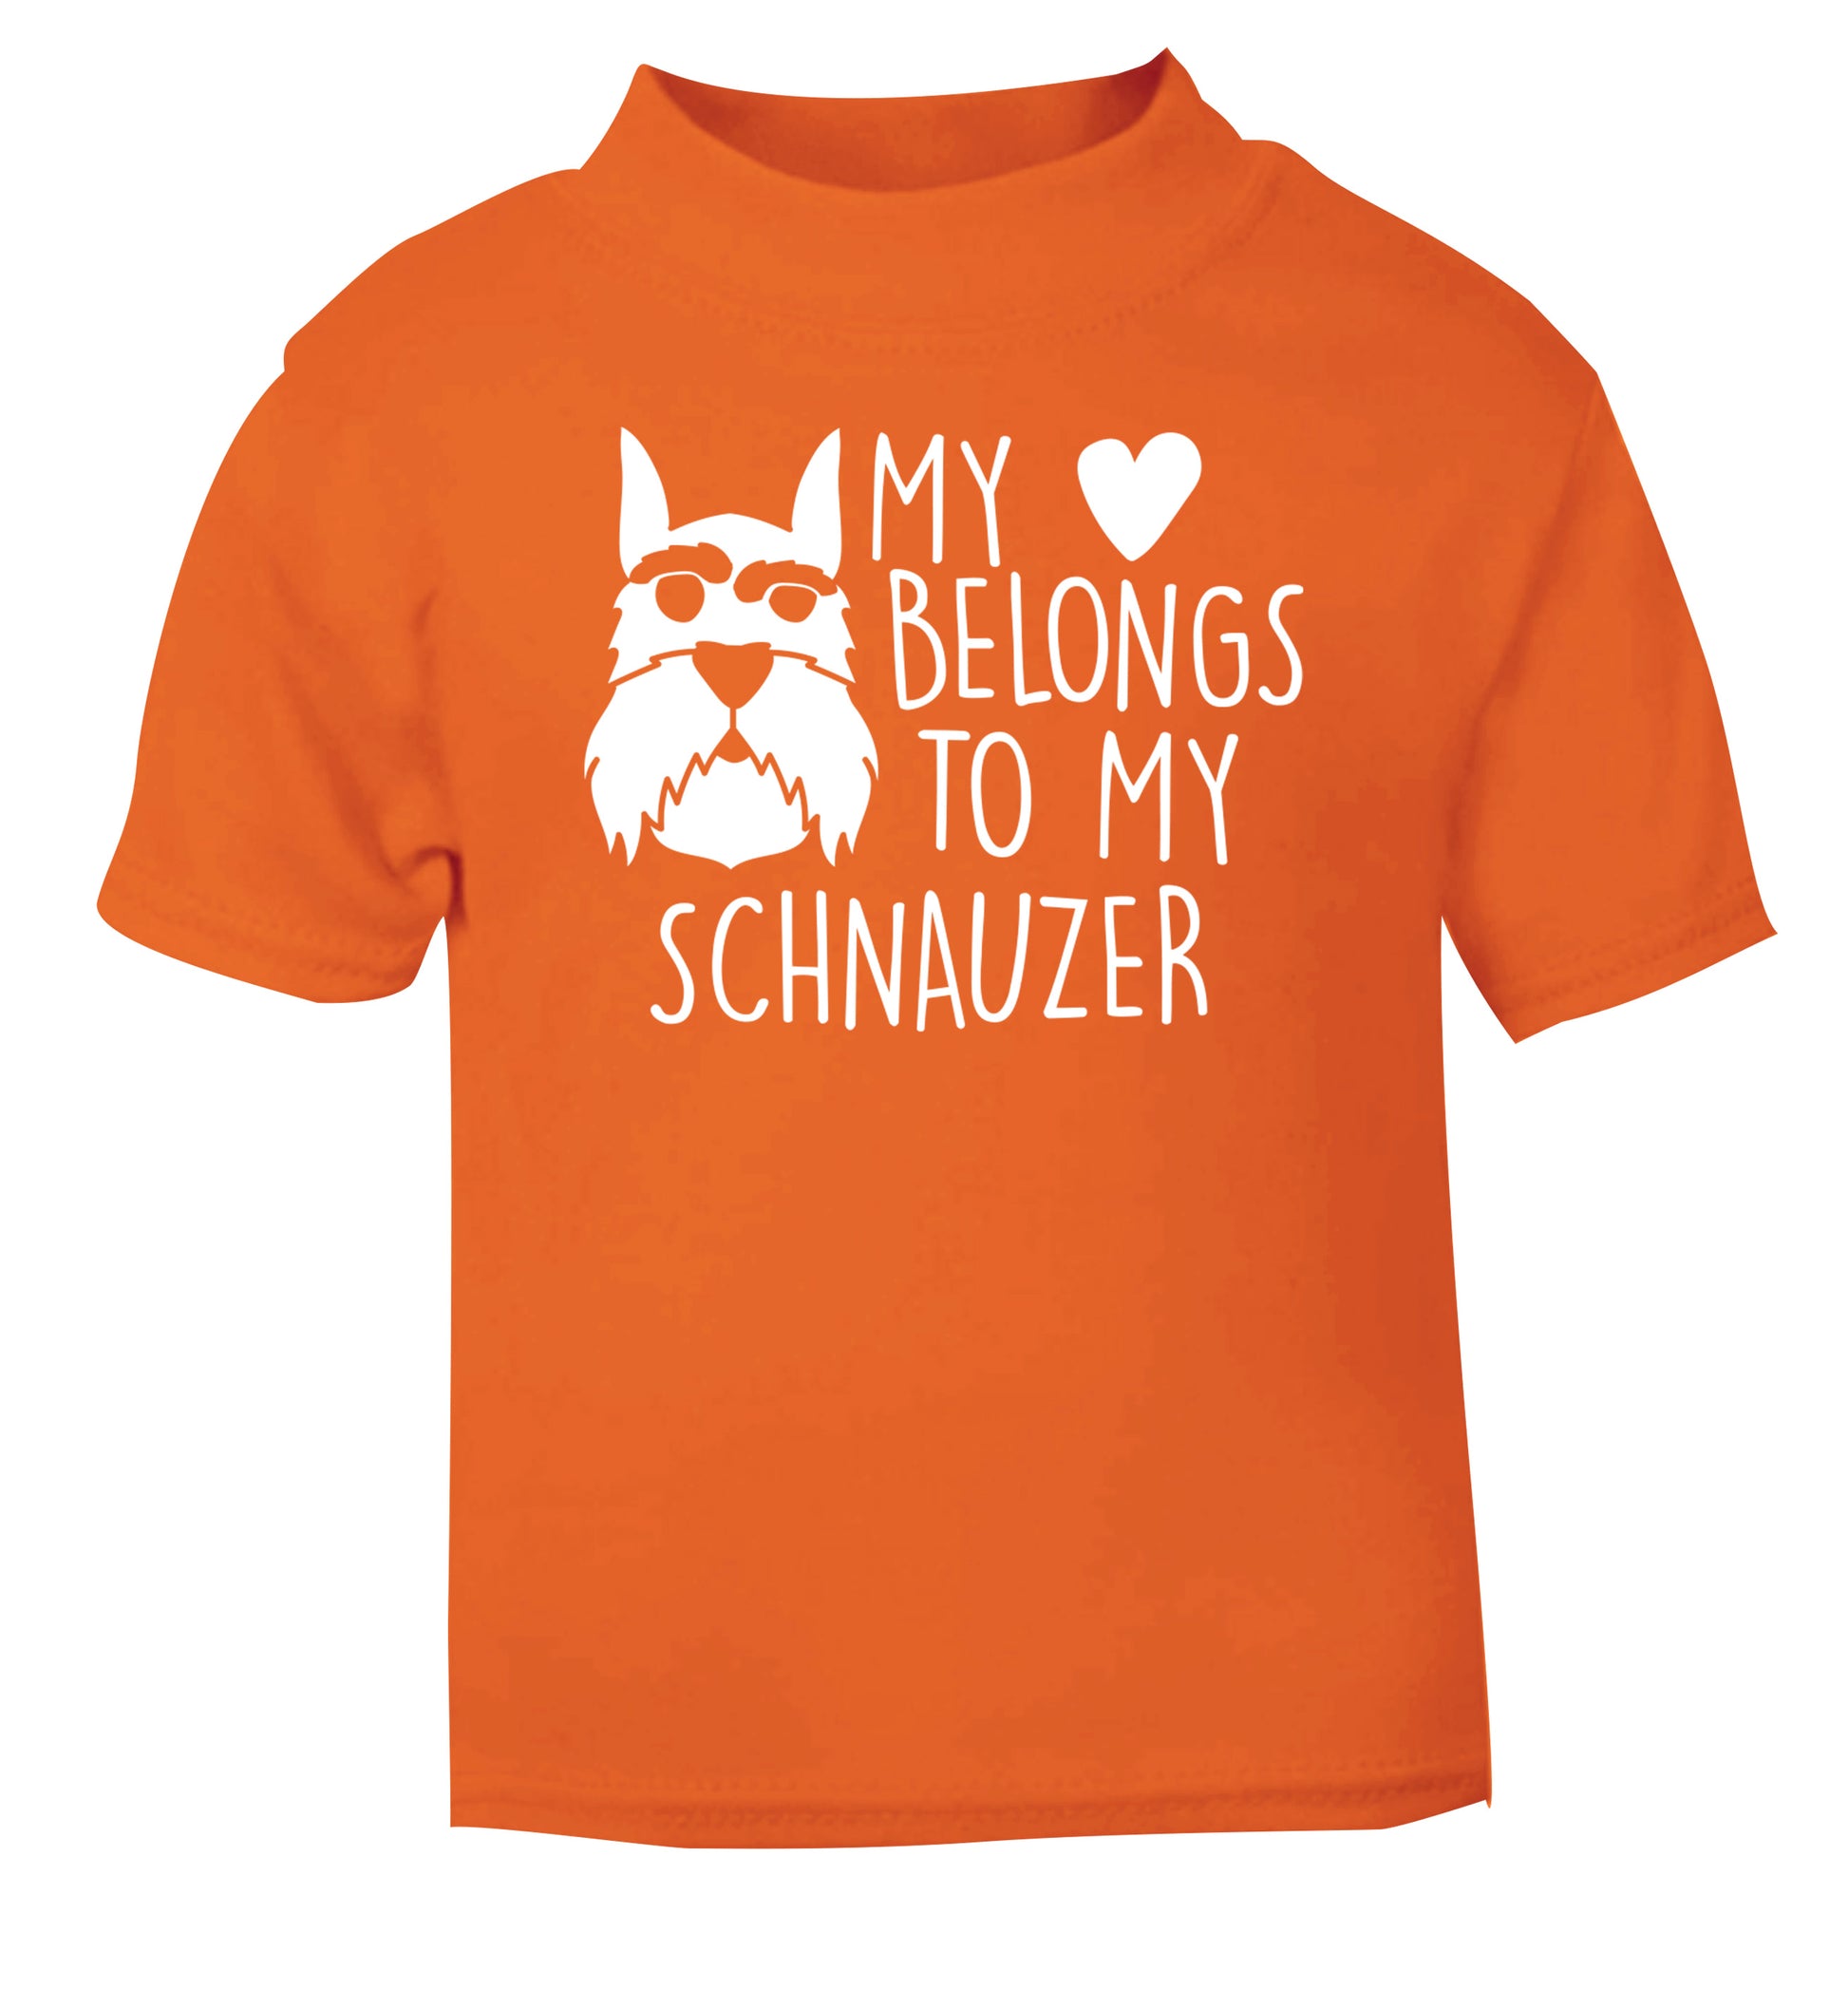 My heart belongs to my schnauzer orange Baby Toddler Tshirt 2 Years